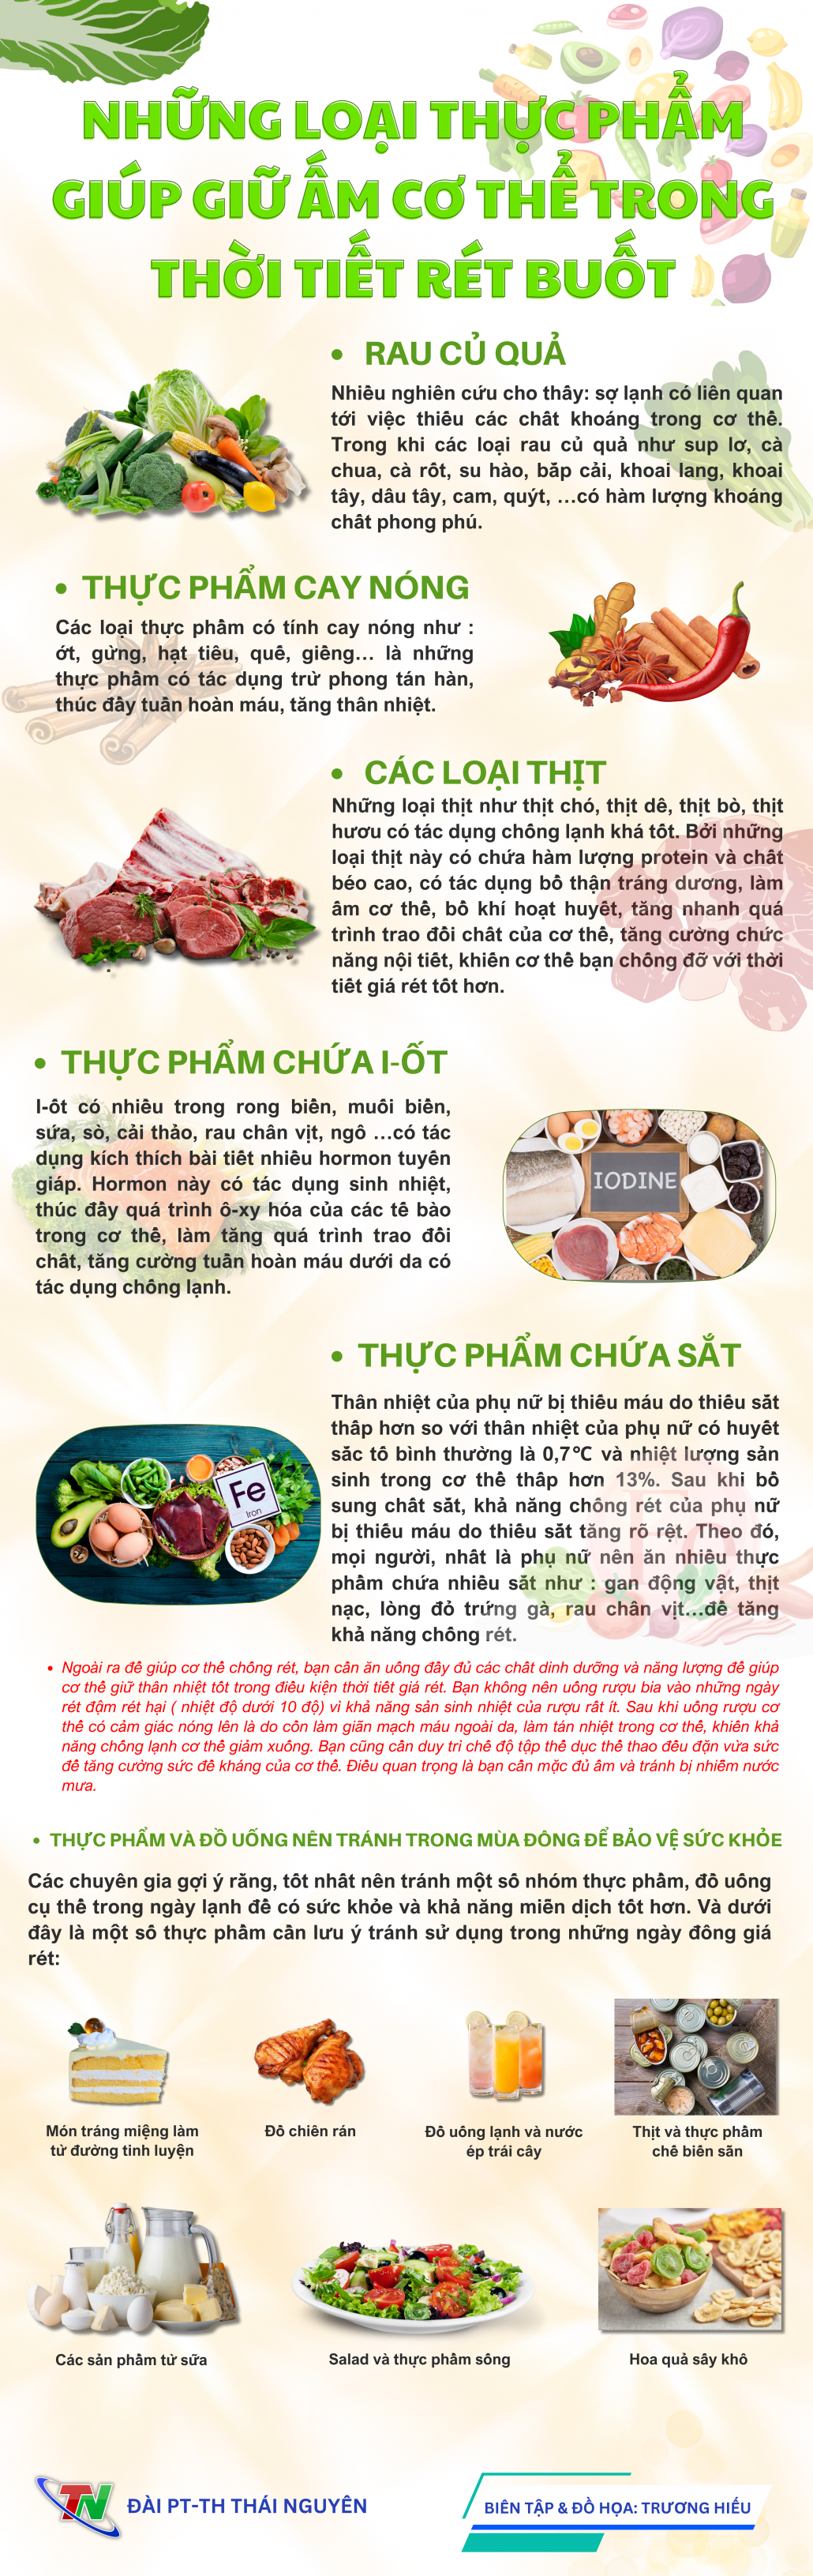 [Infographic] Những loại thực phẩm giúp giữ ấm cơ thể trong thời tiết rét buốt